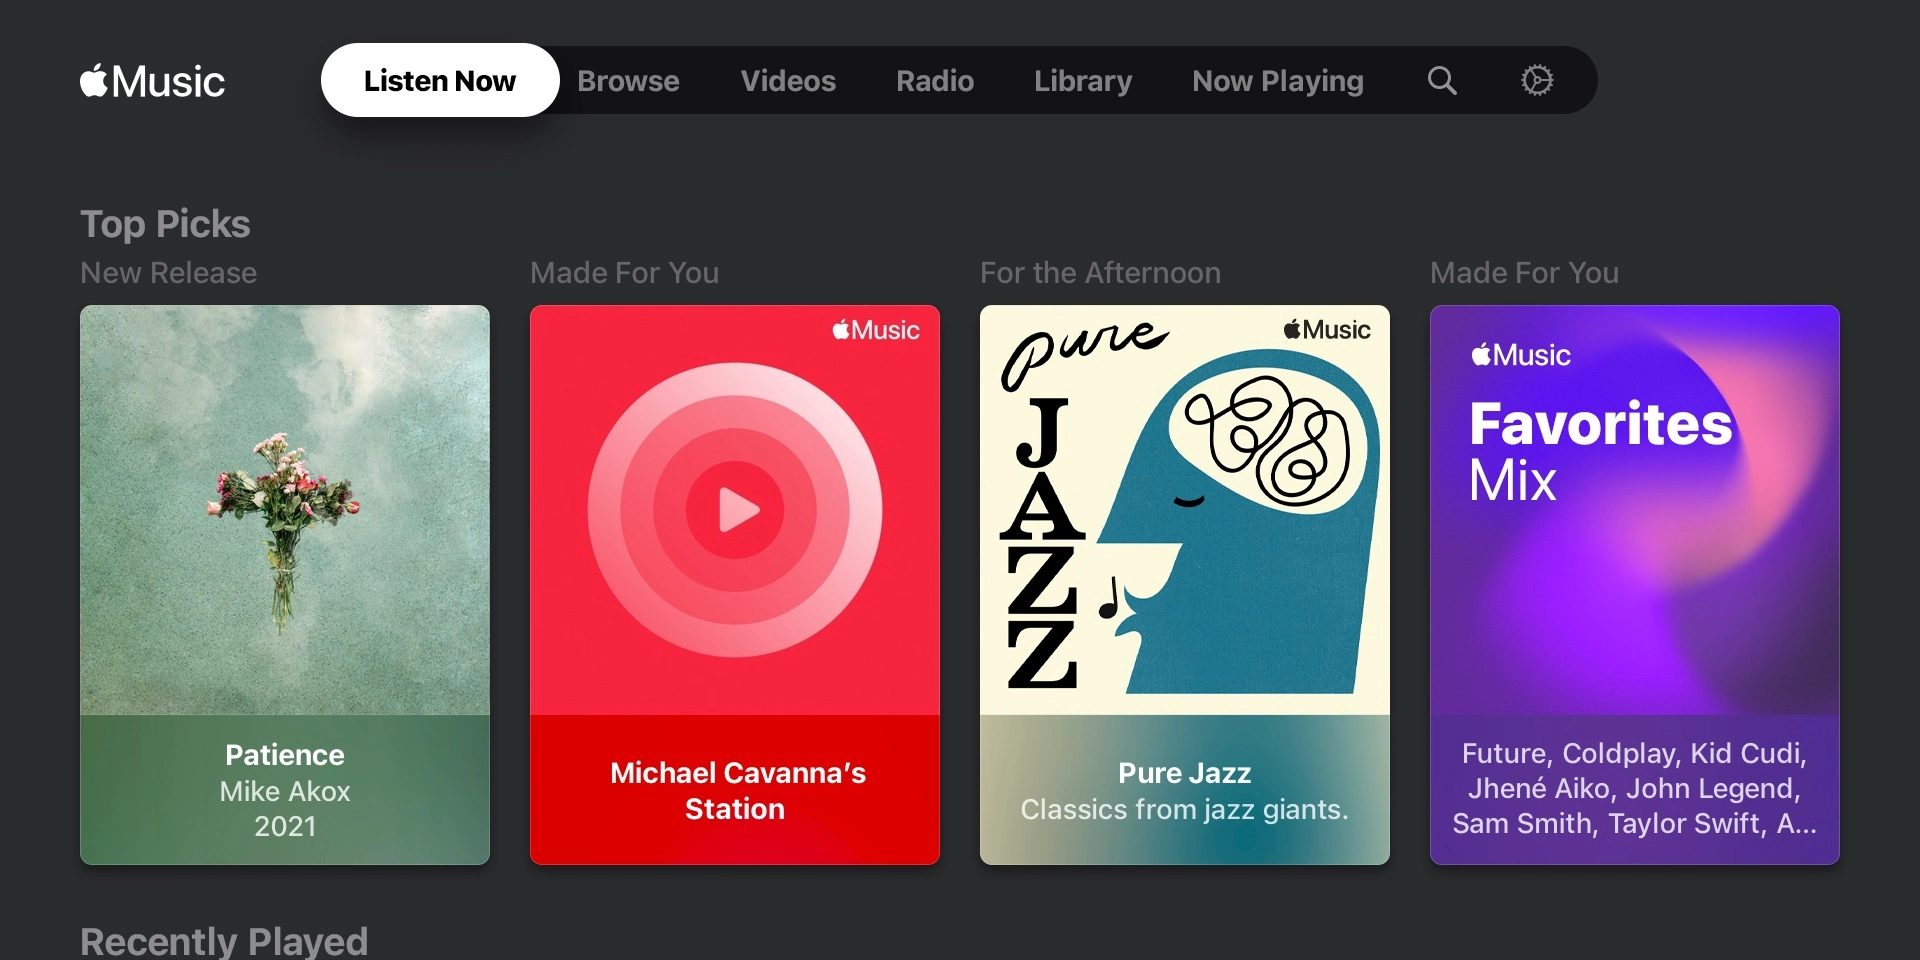 Apple Music App appare sulle smart TV di LG